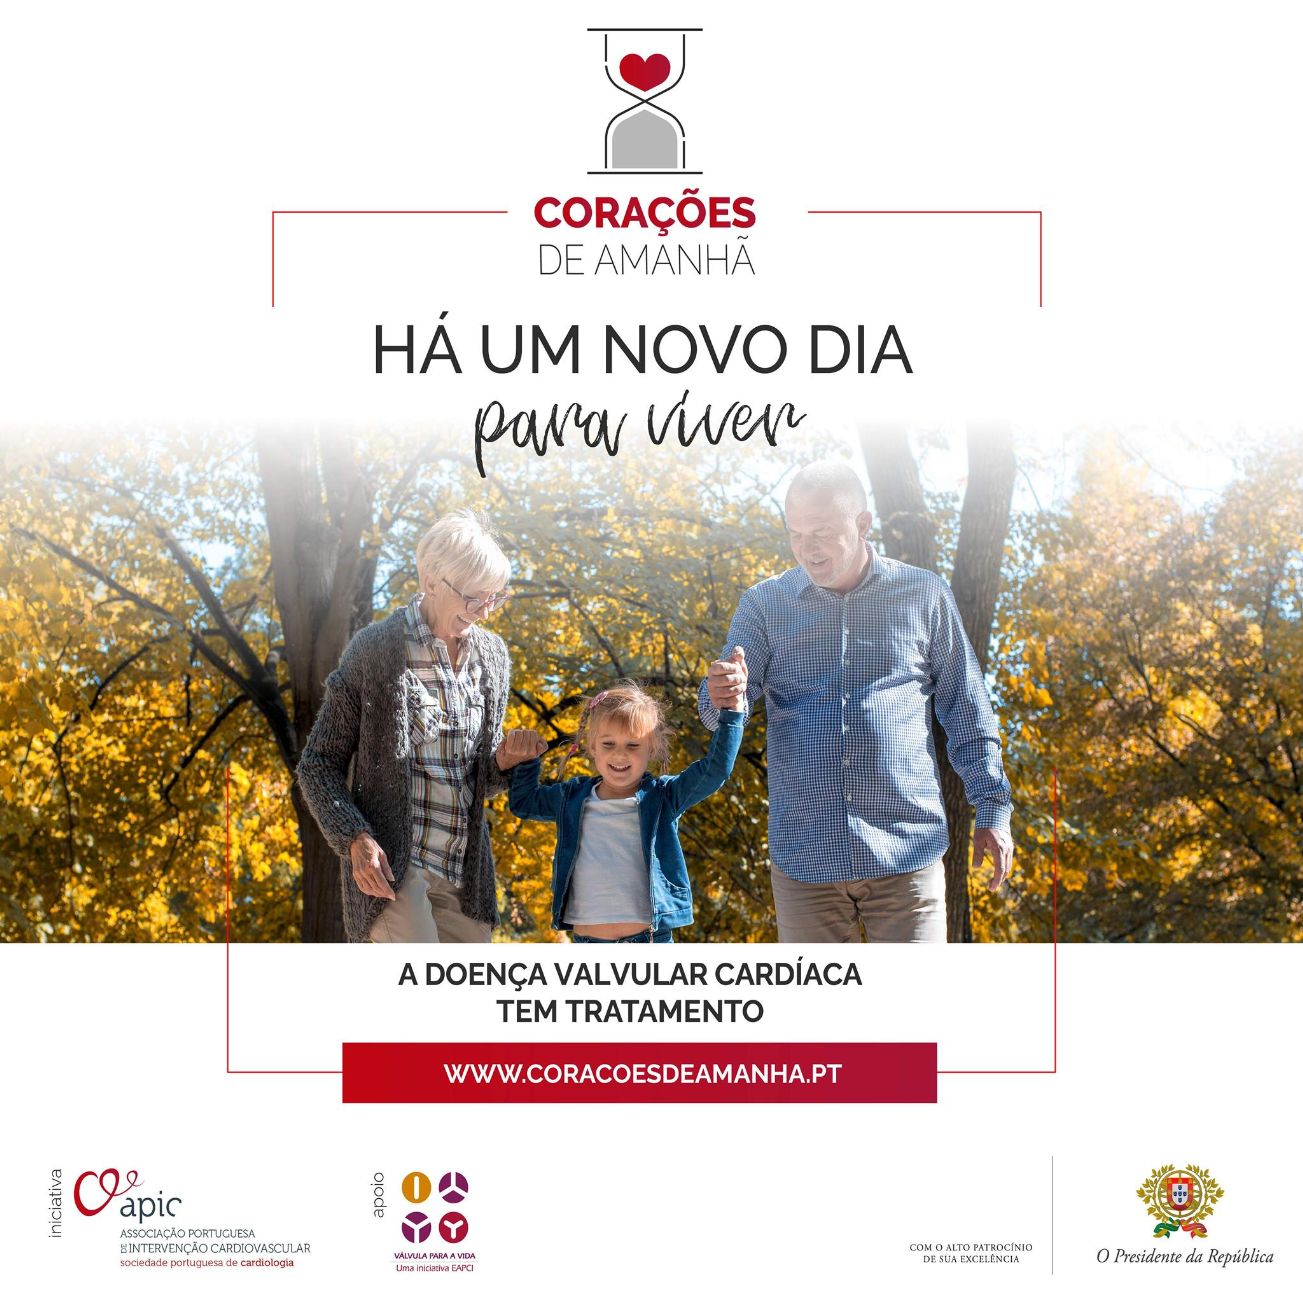 Campanha portuguesa apresentada como caso de sucesso internacionalmente